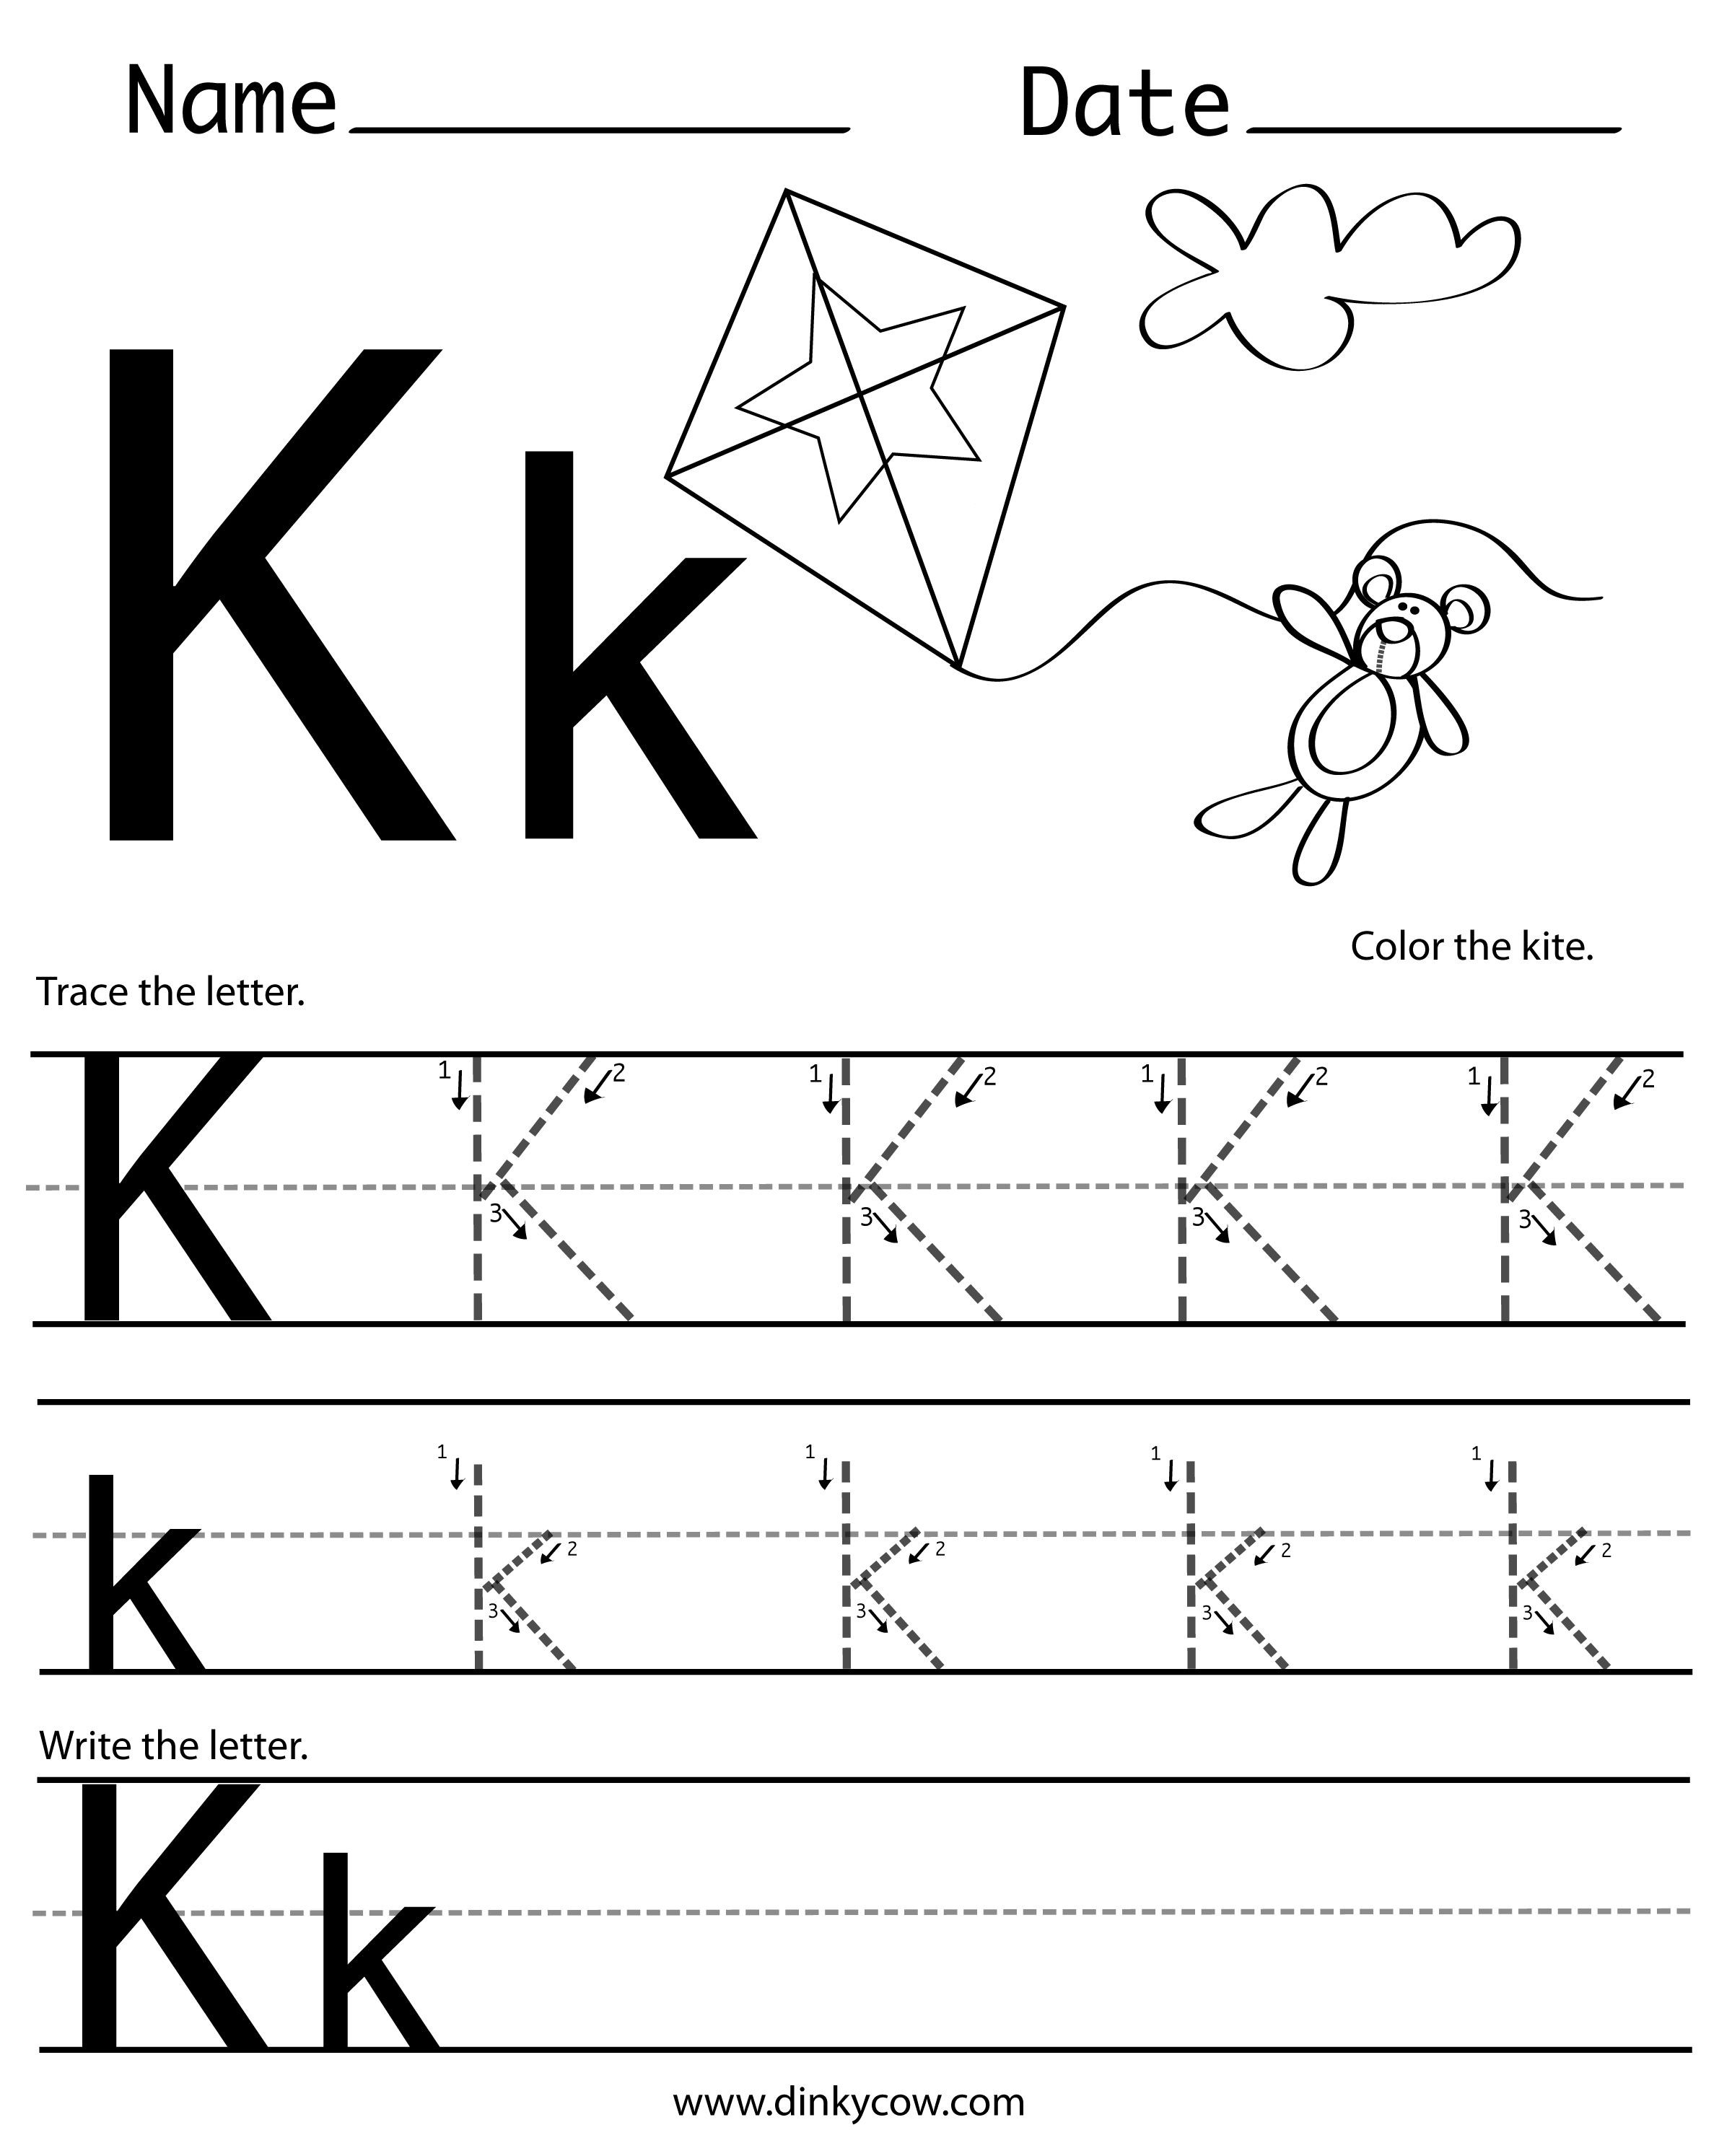 Letter K Tracing Worksheets Preschool K Free Handwriting Worksheet Print 2 4002 988 Pixels